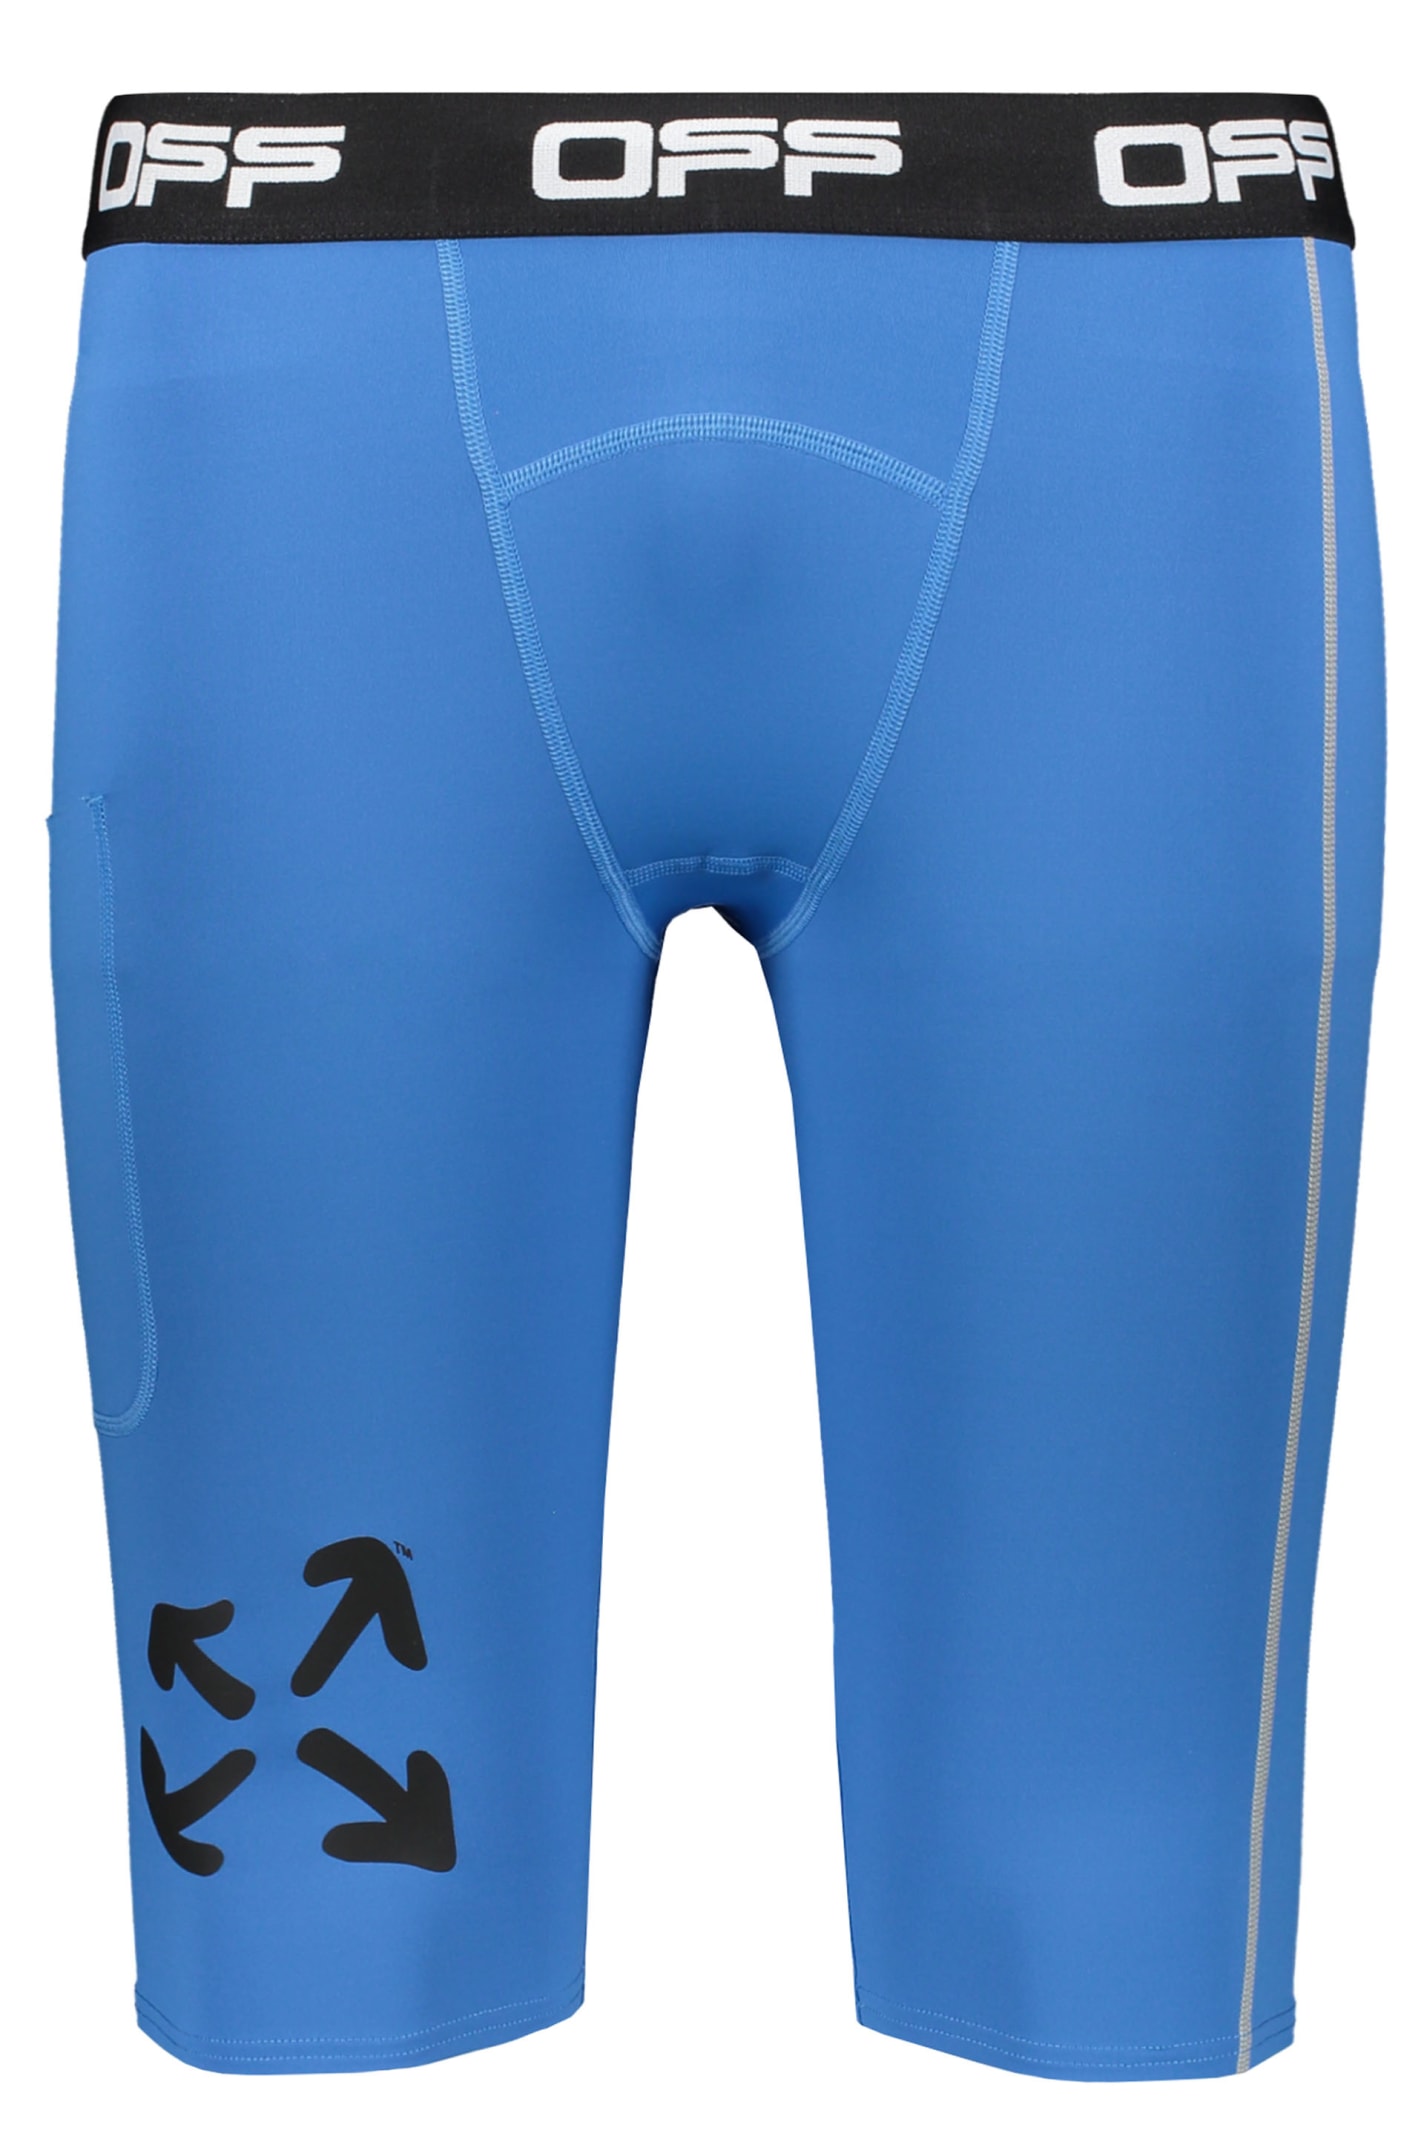 Off-white Techno Fabric Bermuda-shorts In Blue